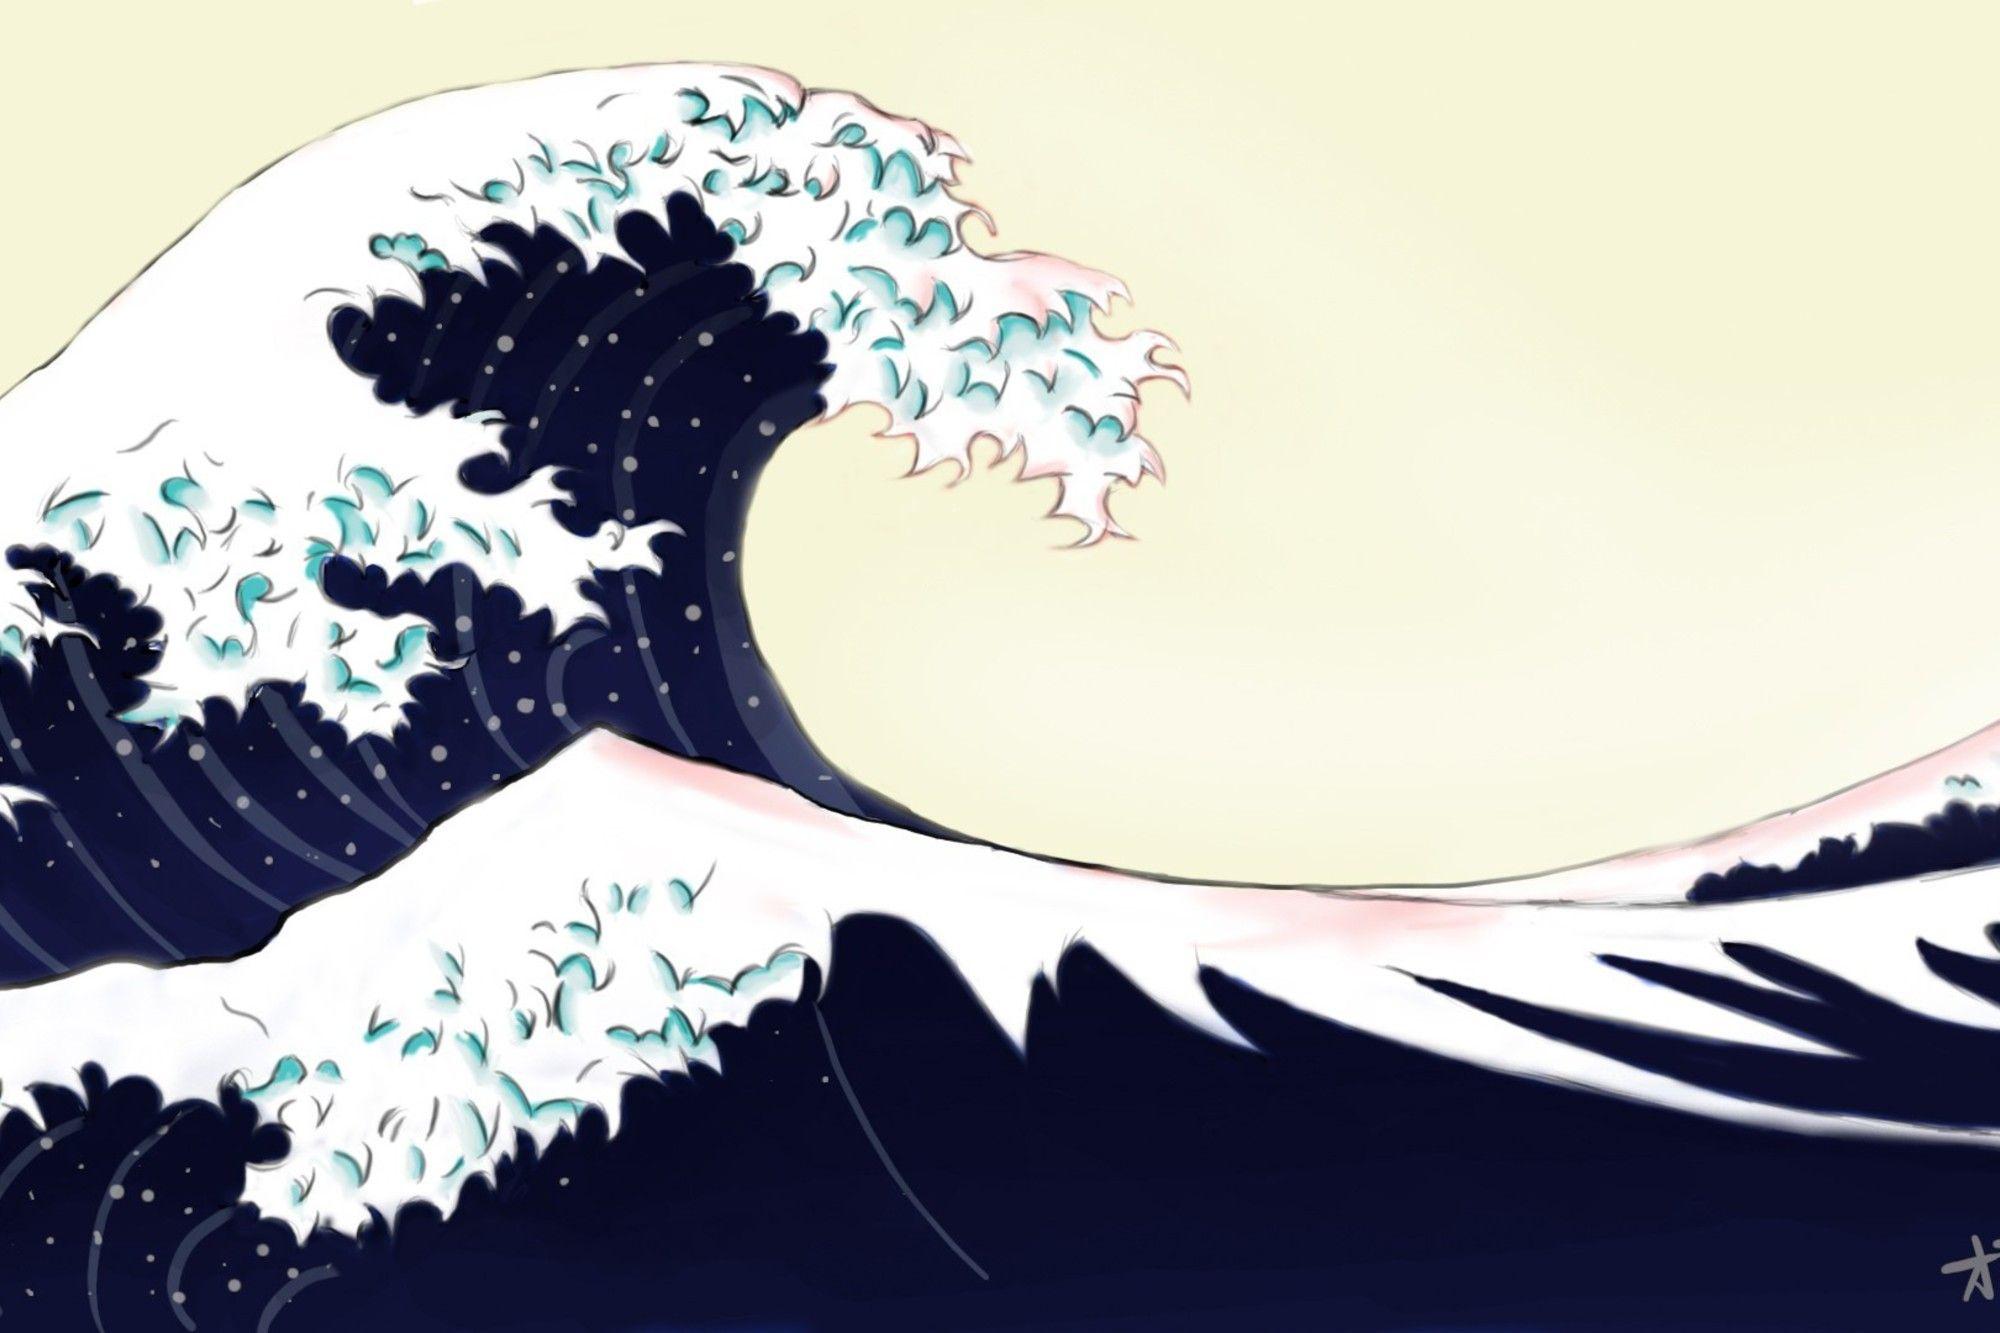 2000x1333 Hình nền đại dương xanh cho tác phẩm nghệ thuật kanagawa wave off tuyệt vời.  AllWallpaper